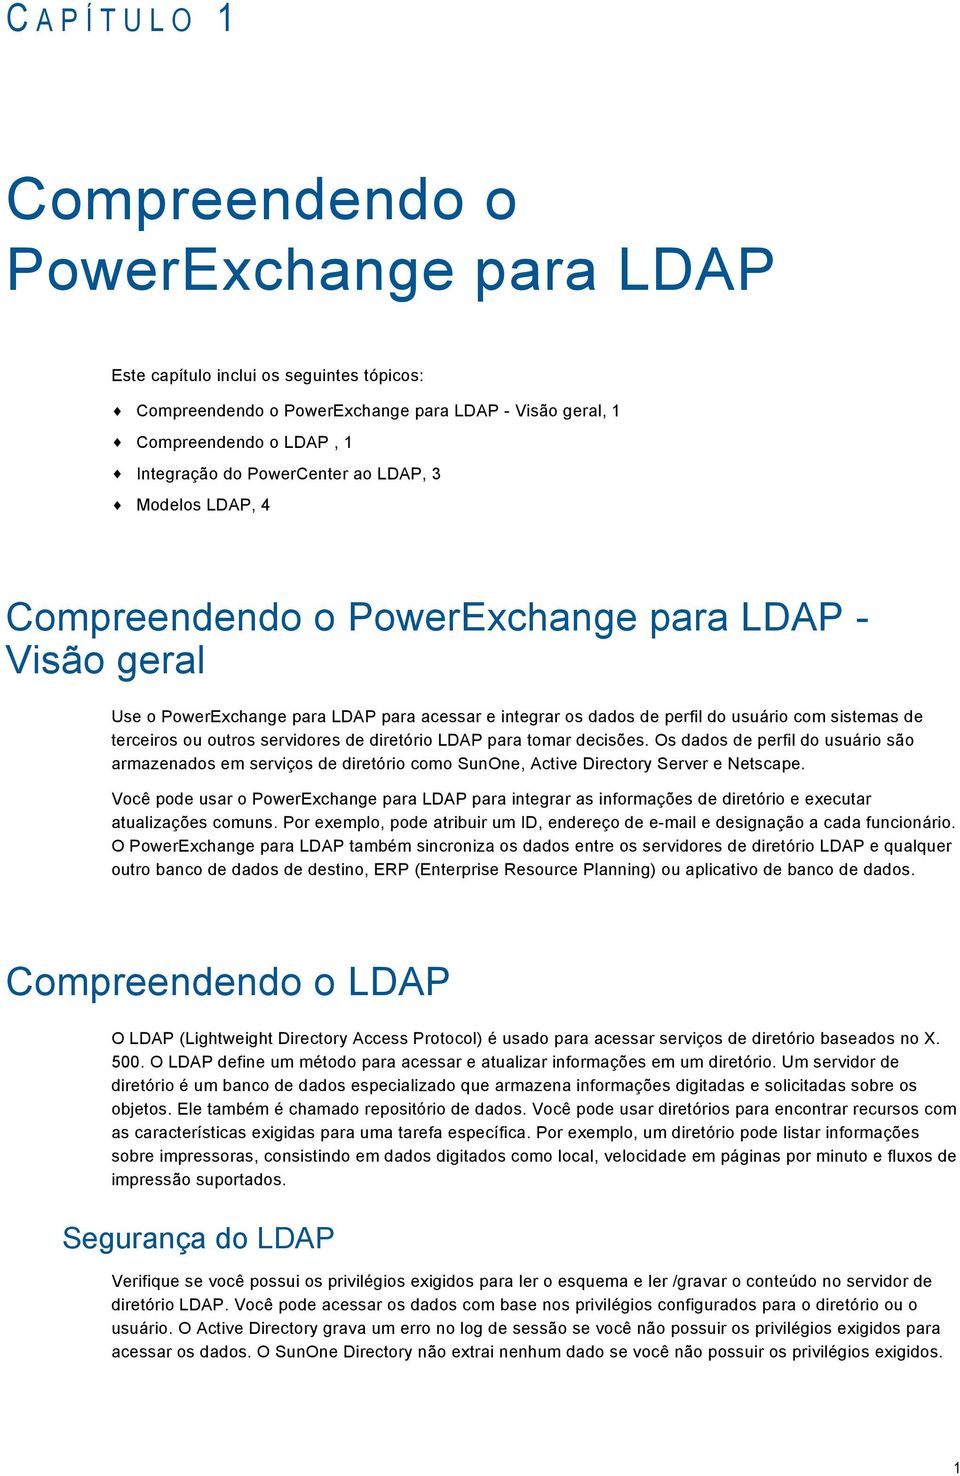 terceiros ou outros servidores de diretório LDAP para tomar decisões. Os dados de perfil do usuário são armazenados em serviços de diretório como SunOne, Active Directory Server e Netscape.